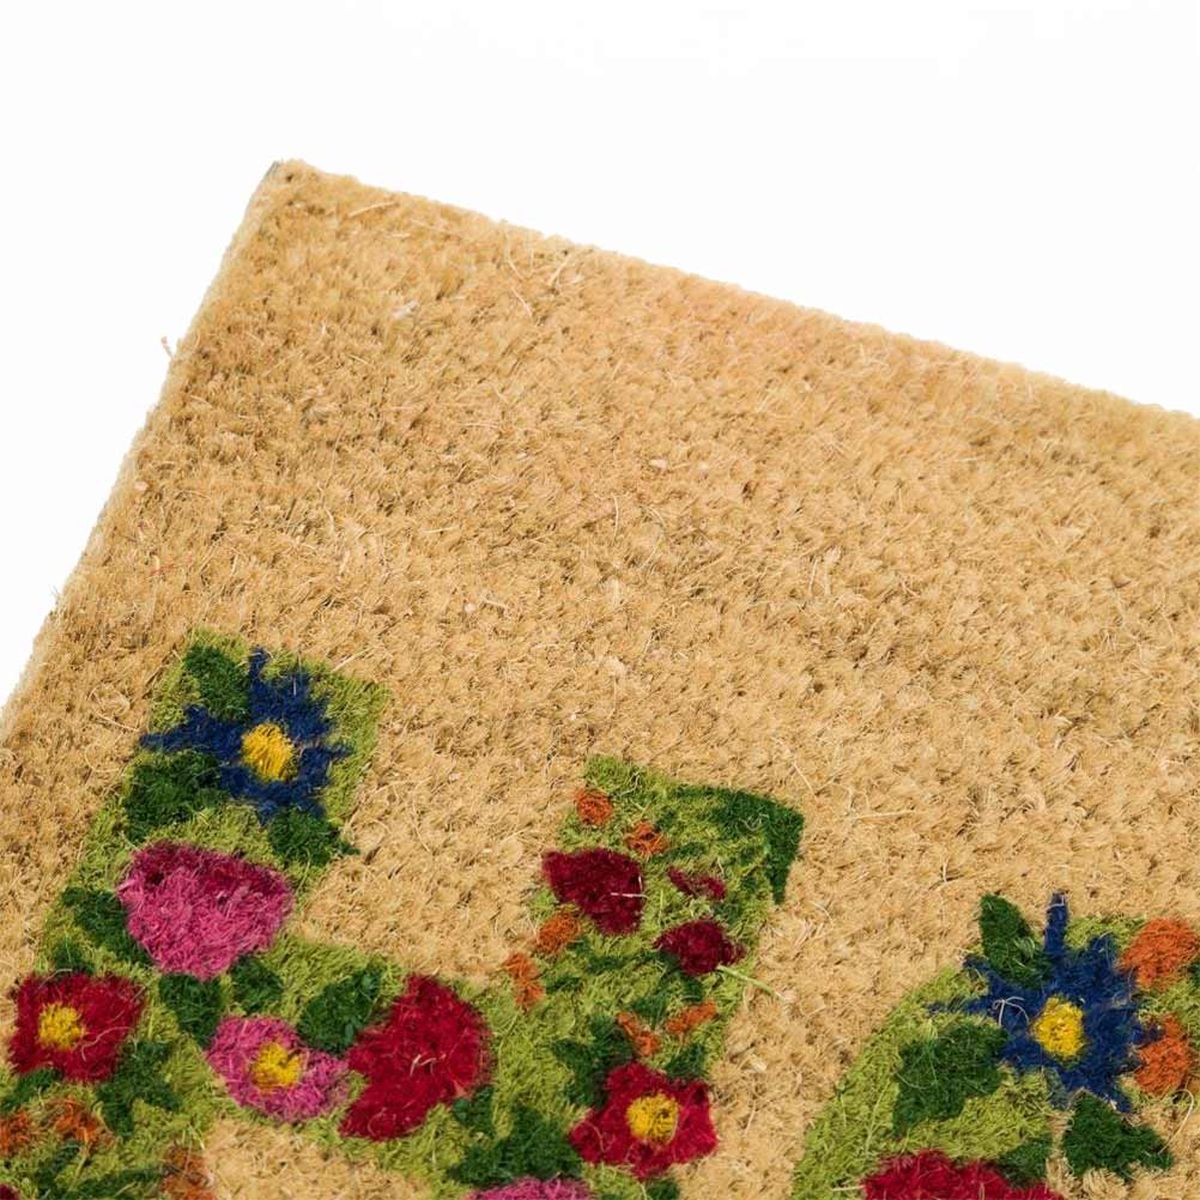 Coconut fibers Doormat - Home - 60 cm